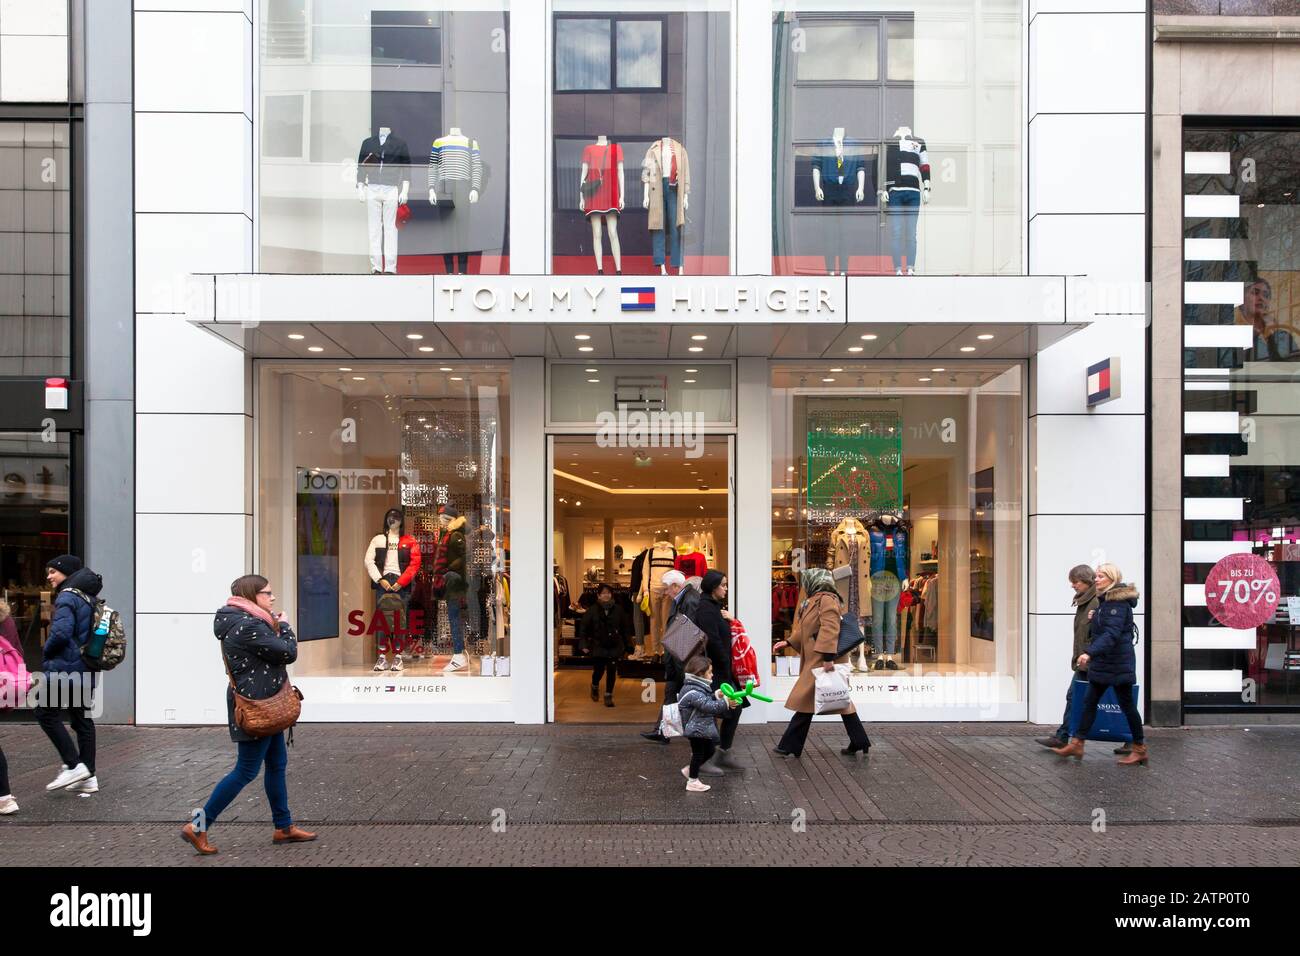 Tienda de moda Tommy Hilfiger en la calle comercial Schildergasse, Colonia,  Alemania. Modegeschaeft Tommy Hilfiger en der Einkaufsstrasse  Schildergasse, K Fotografía de stock - Alamy